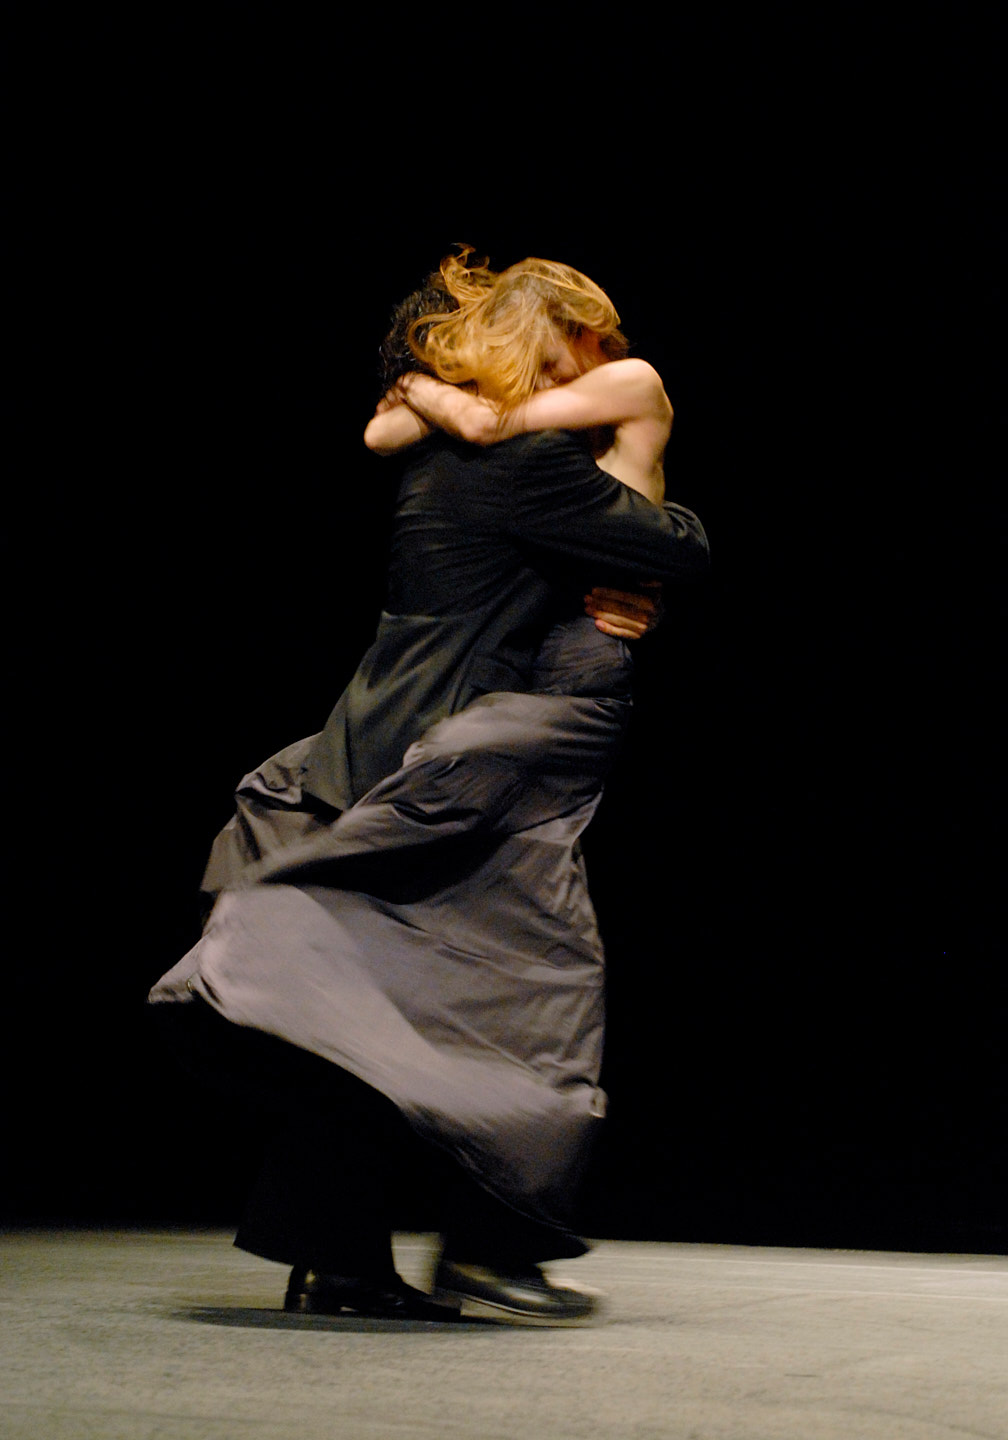 Szenenfoto aus einer Aufführung des Tanztheater Pina Bausch im Opernhaus Wuppertal. Ein tanzendes Paar, bei dem die Tänzerin die Beine um den Körper ihres Tanzpartners geschlungen hat, der über die Bühne schreitet.